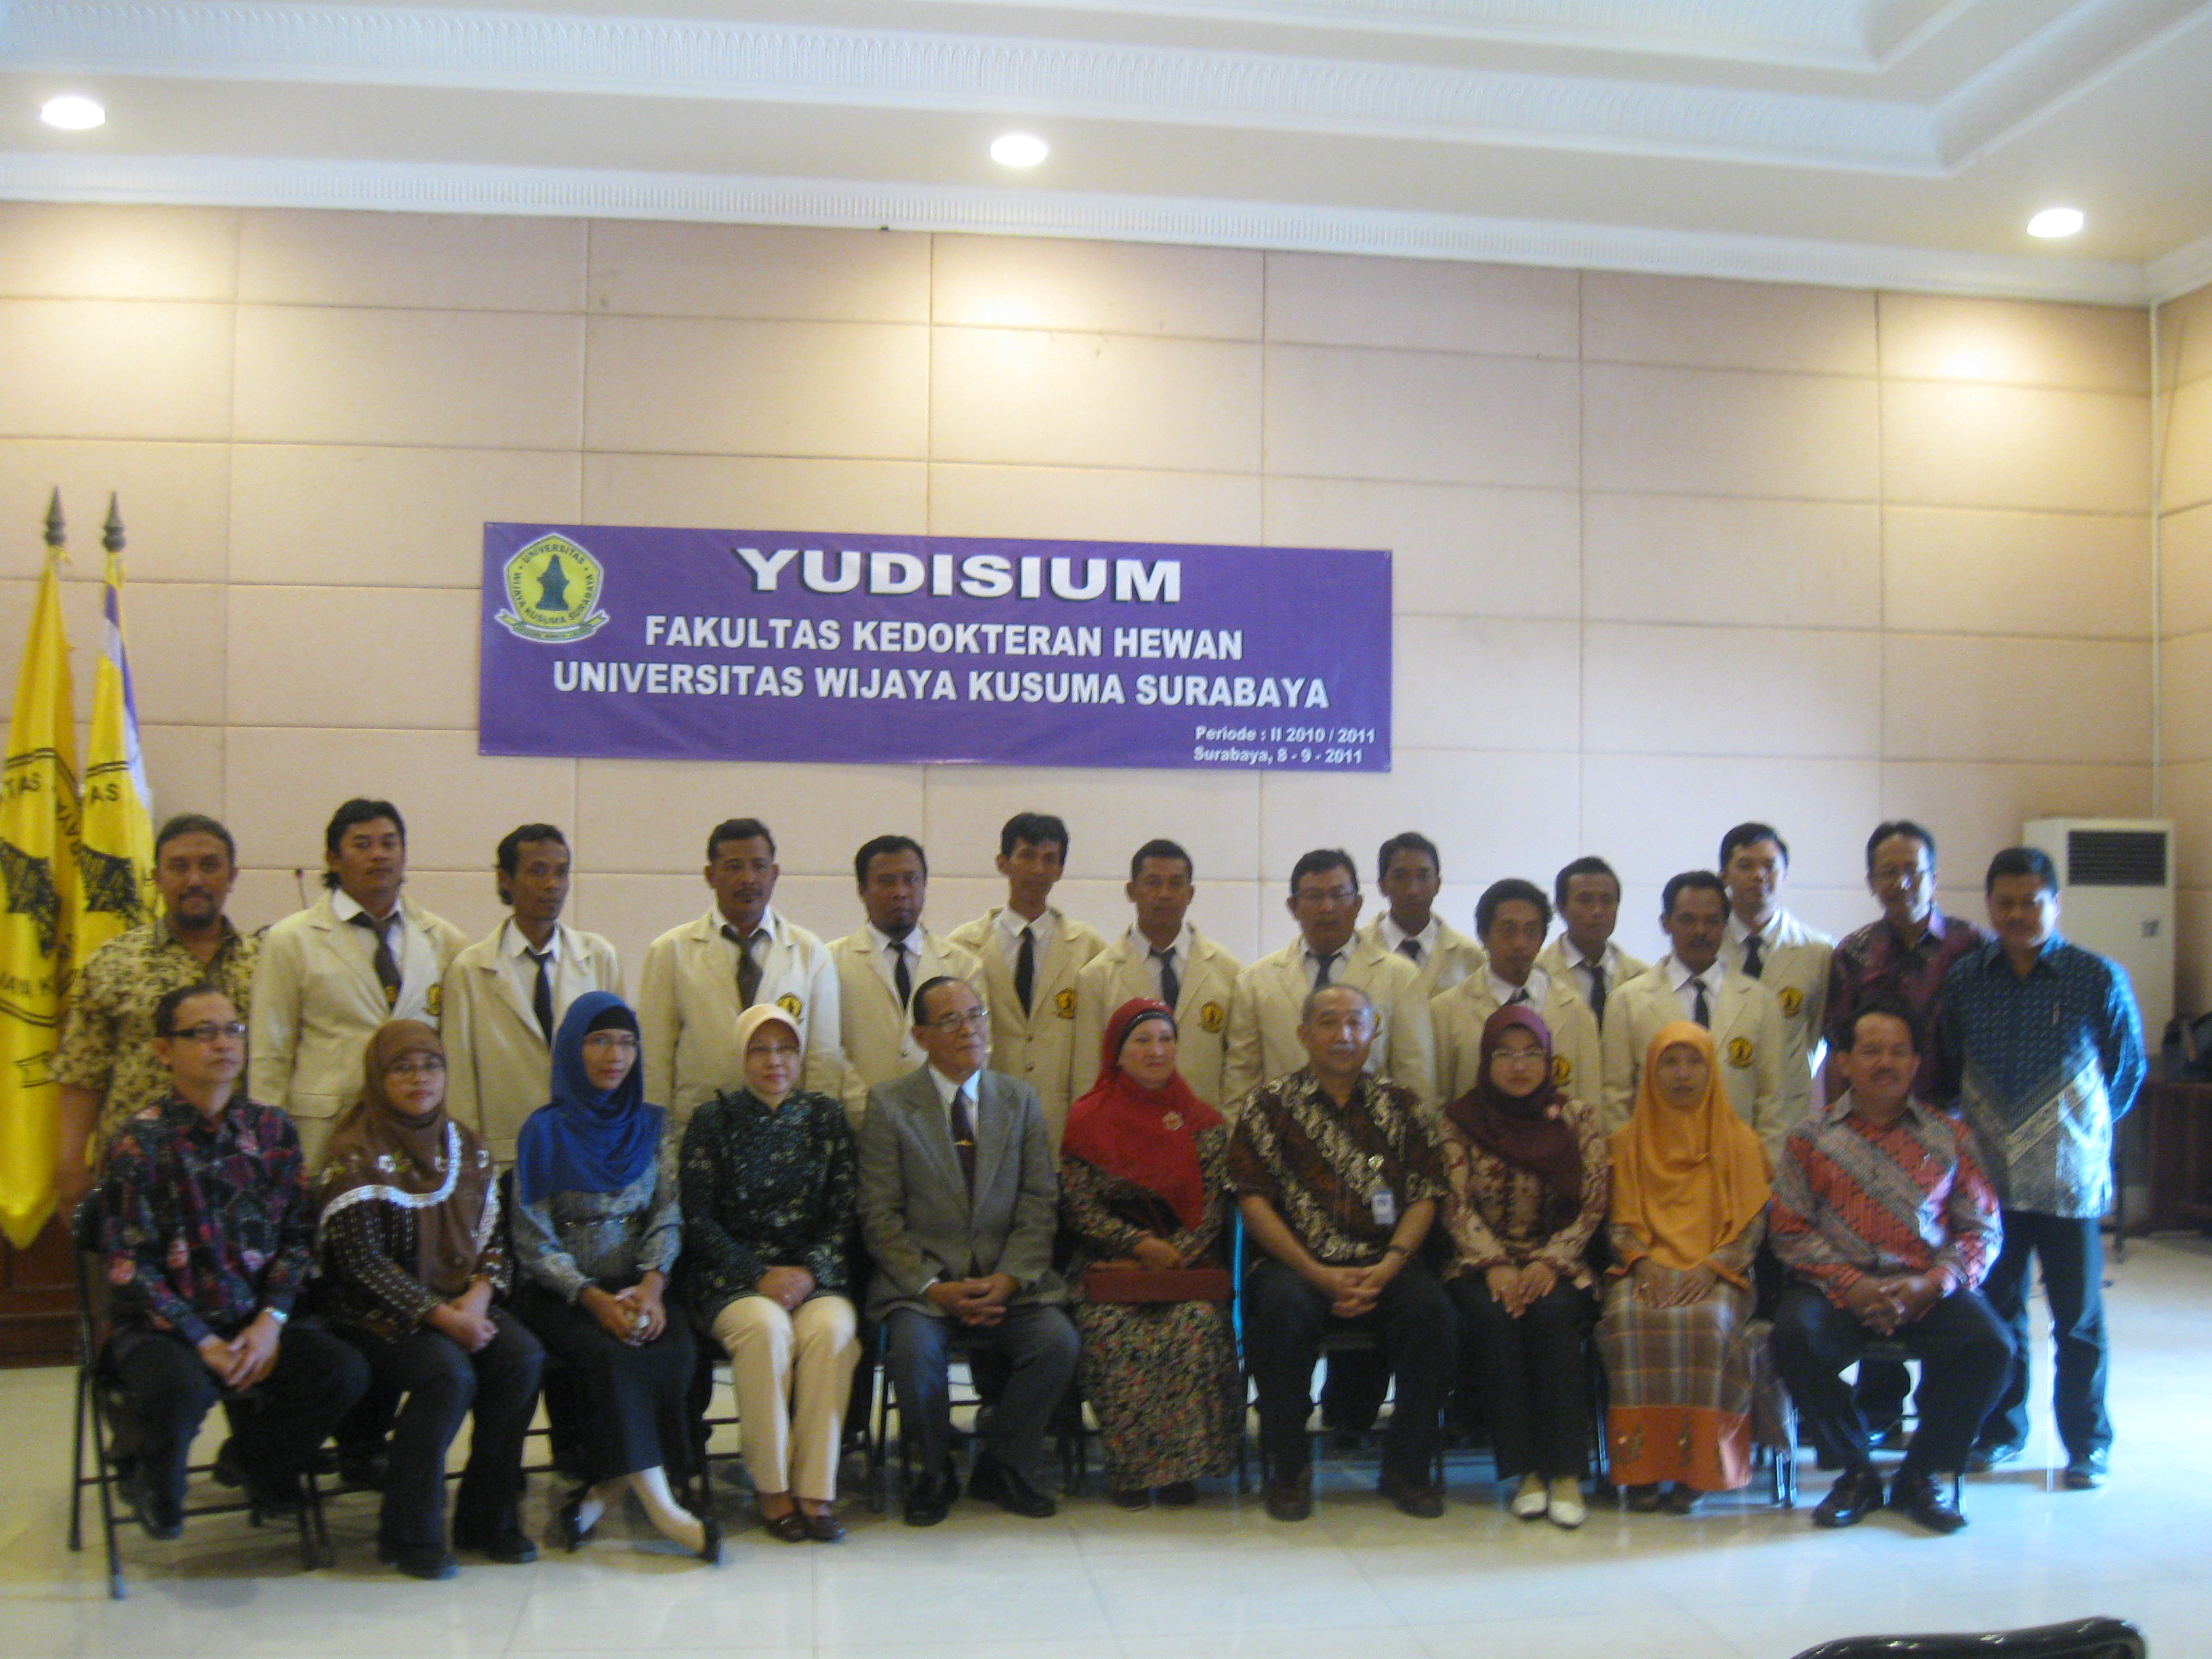 Surabaya – Sebanyak 19 mahasiswa Fakultas Kedokteran Hewan Universitas